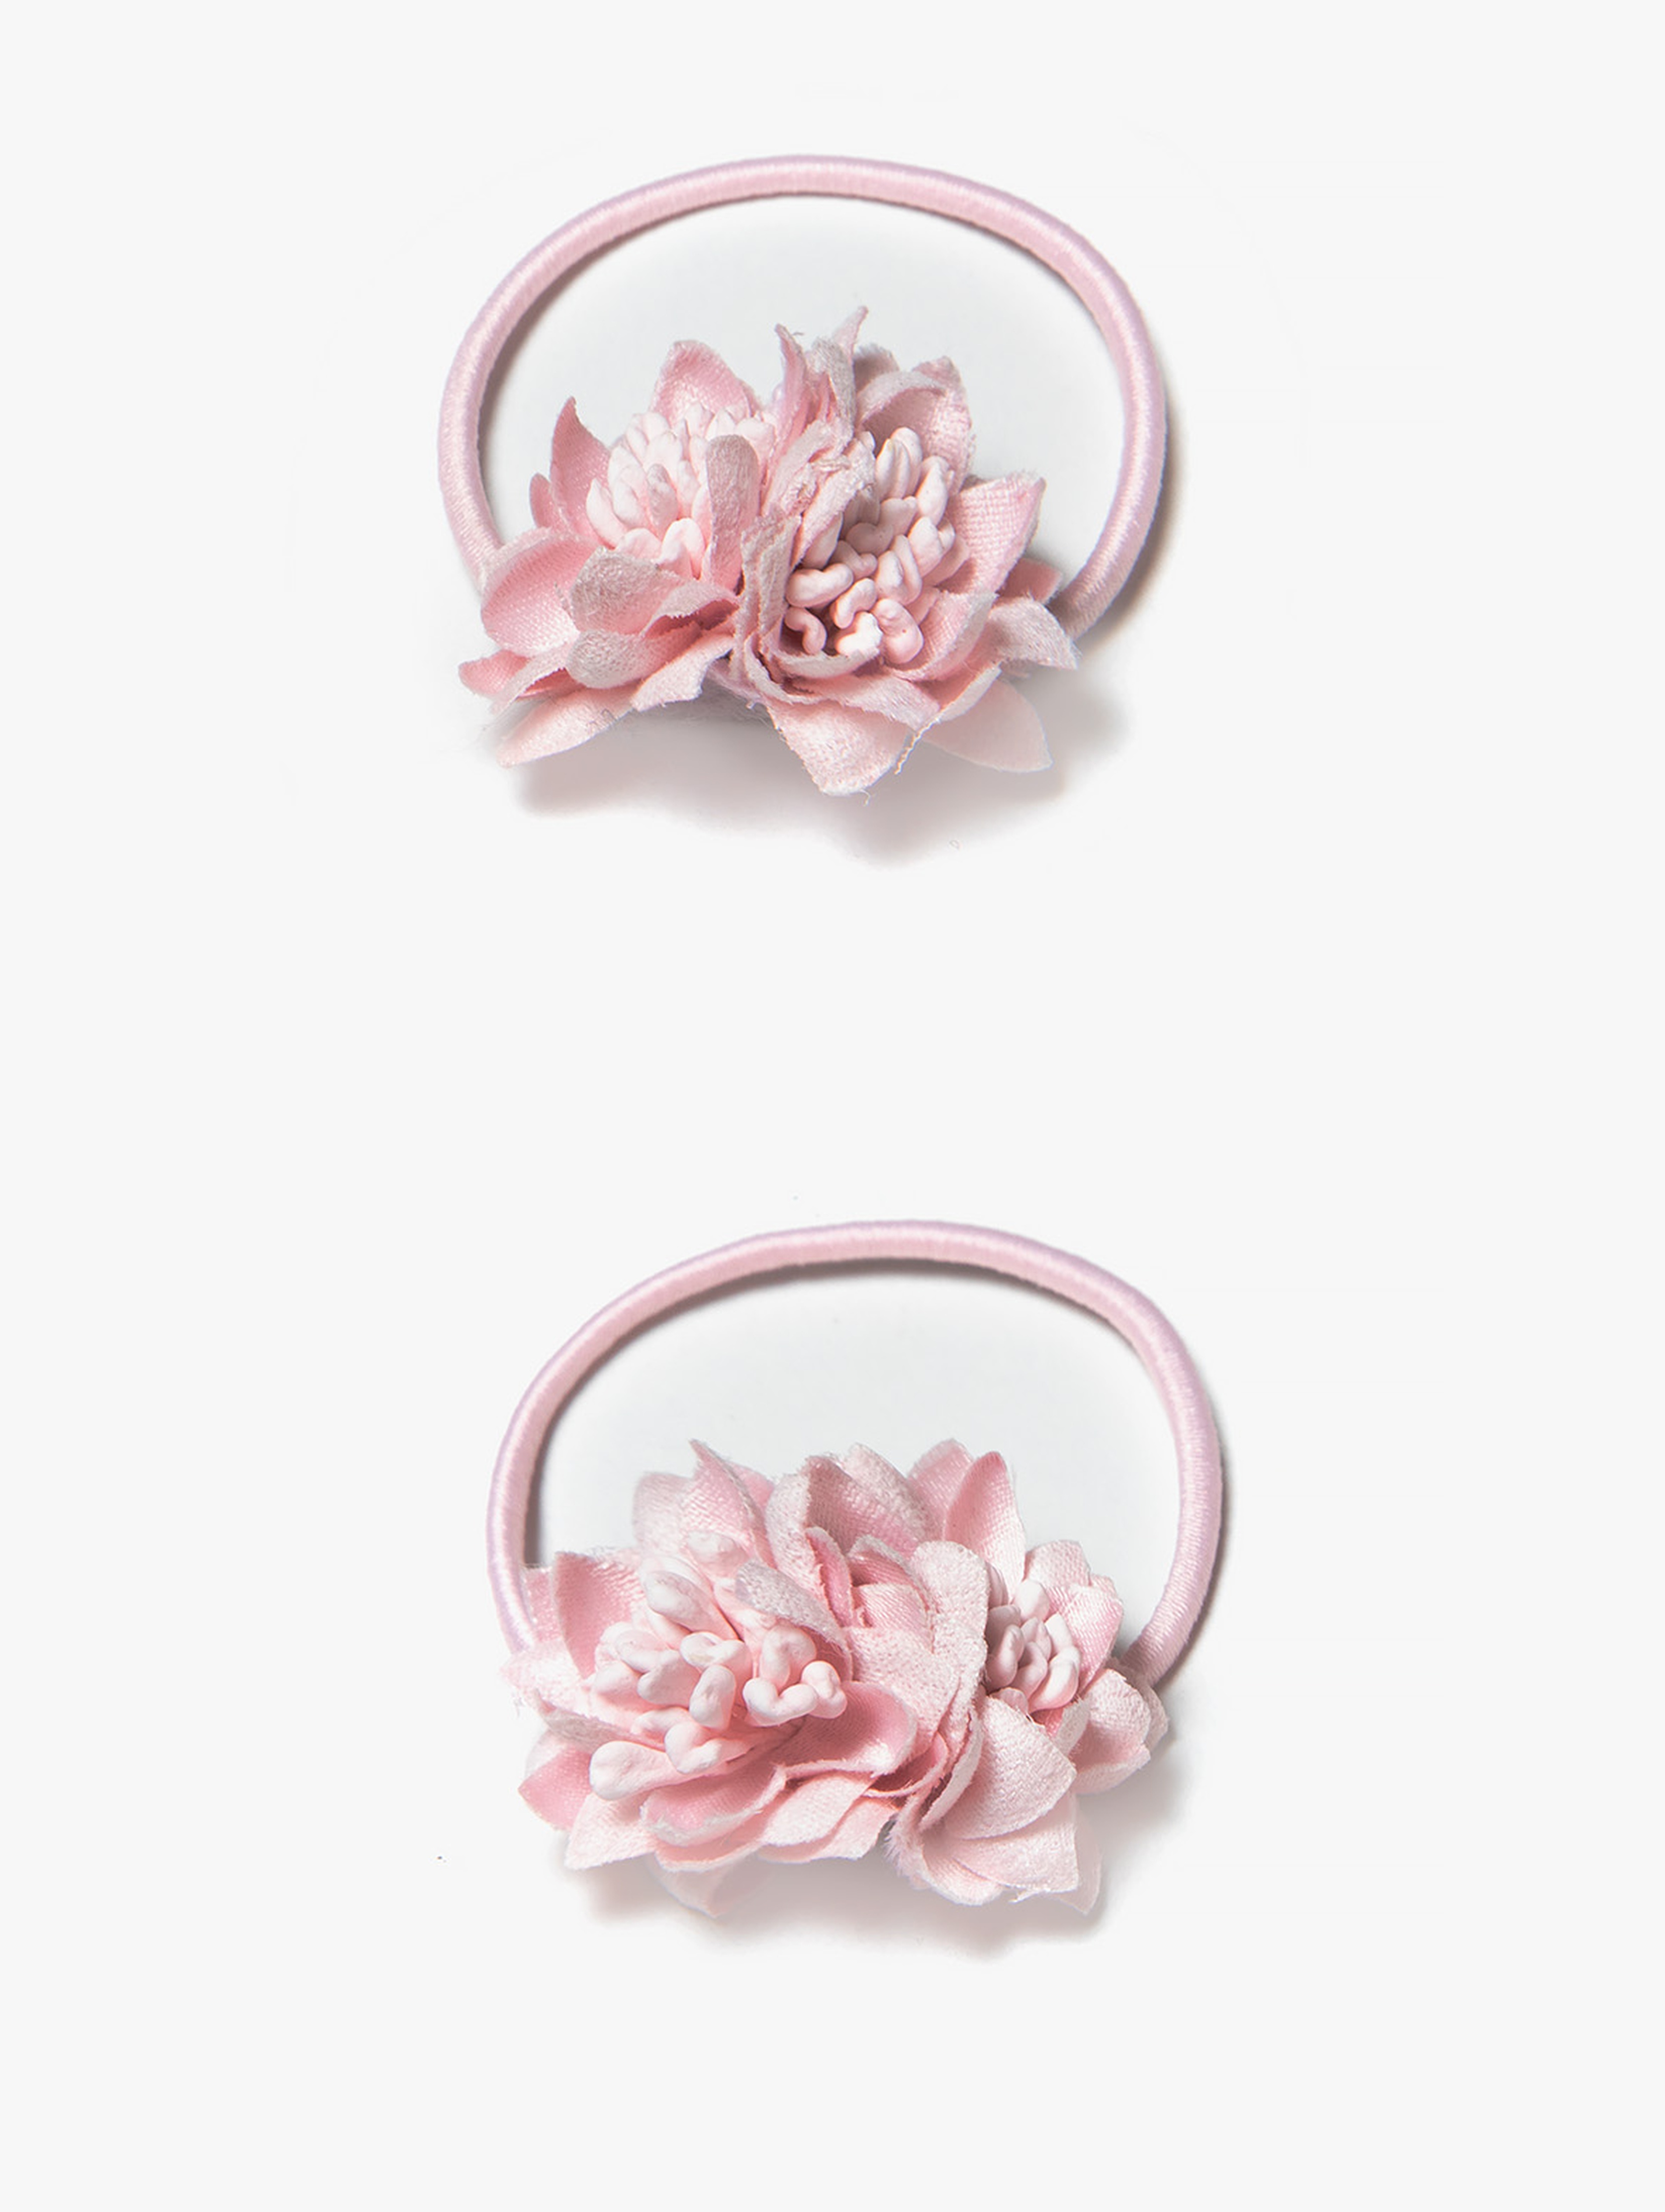 Gumki do włosów - różowe kwiatki 2pak